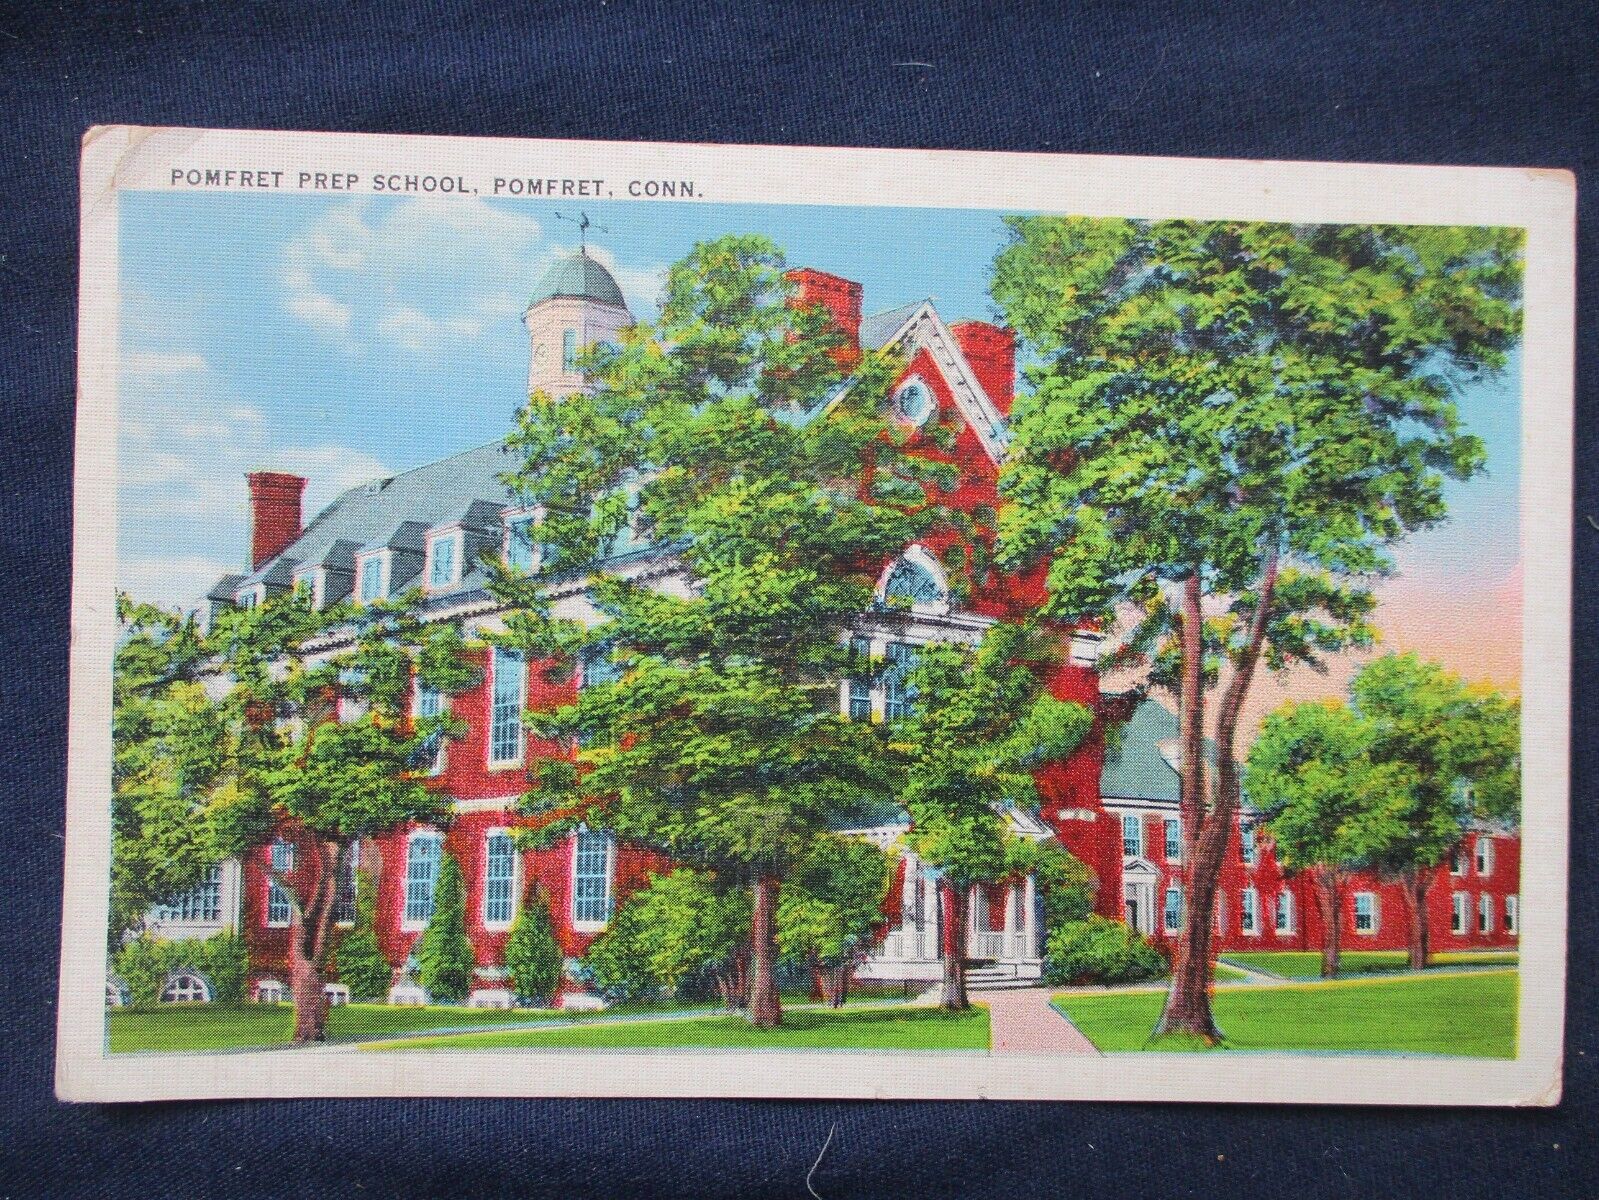 1942 Pomfret Connecticut Prep School Postcard Abington Cancel